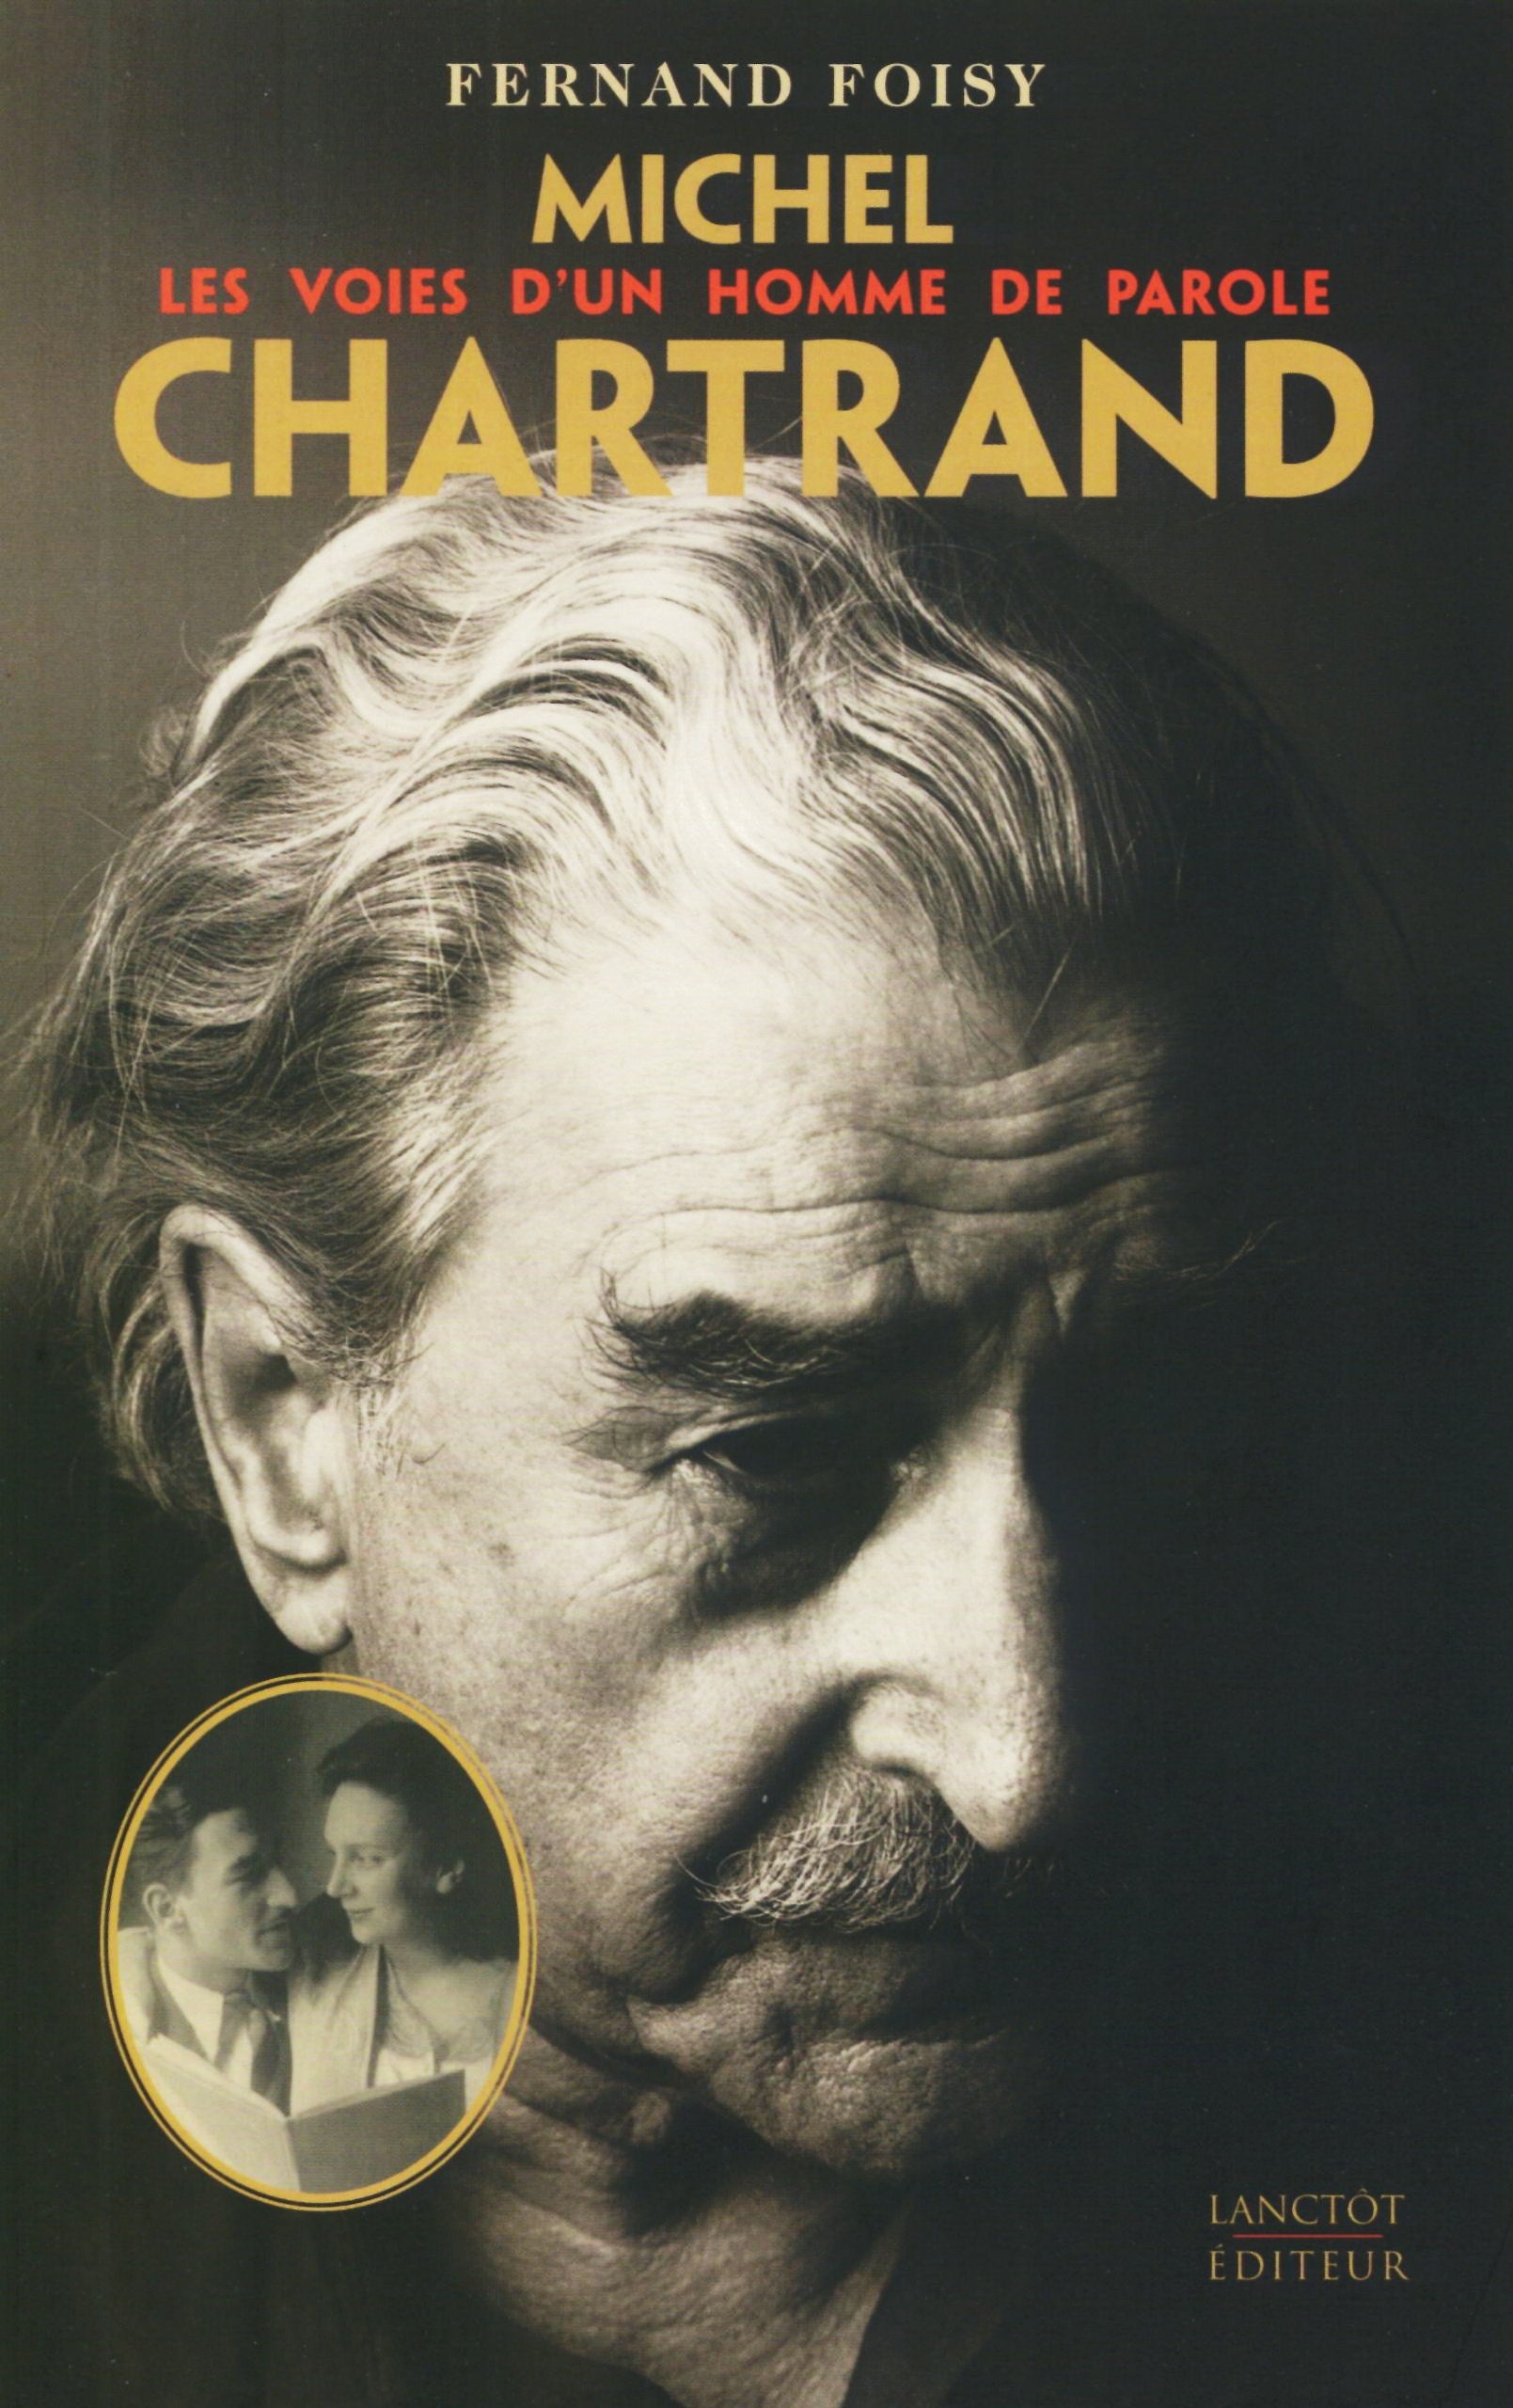 Michel Chartrand: Les voies d'un homme de parole - Fernand Foisy